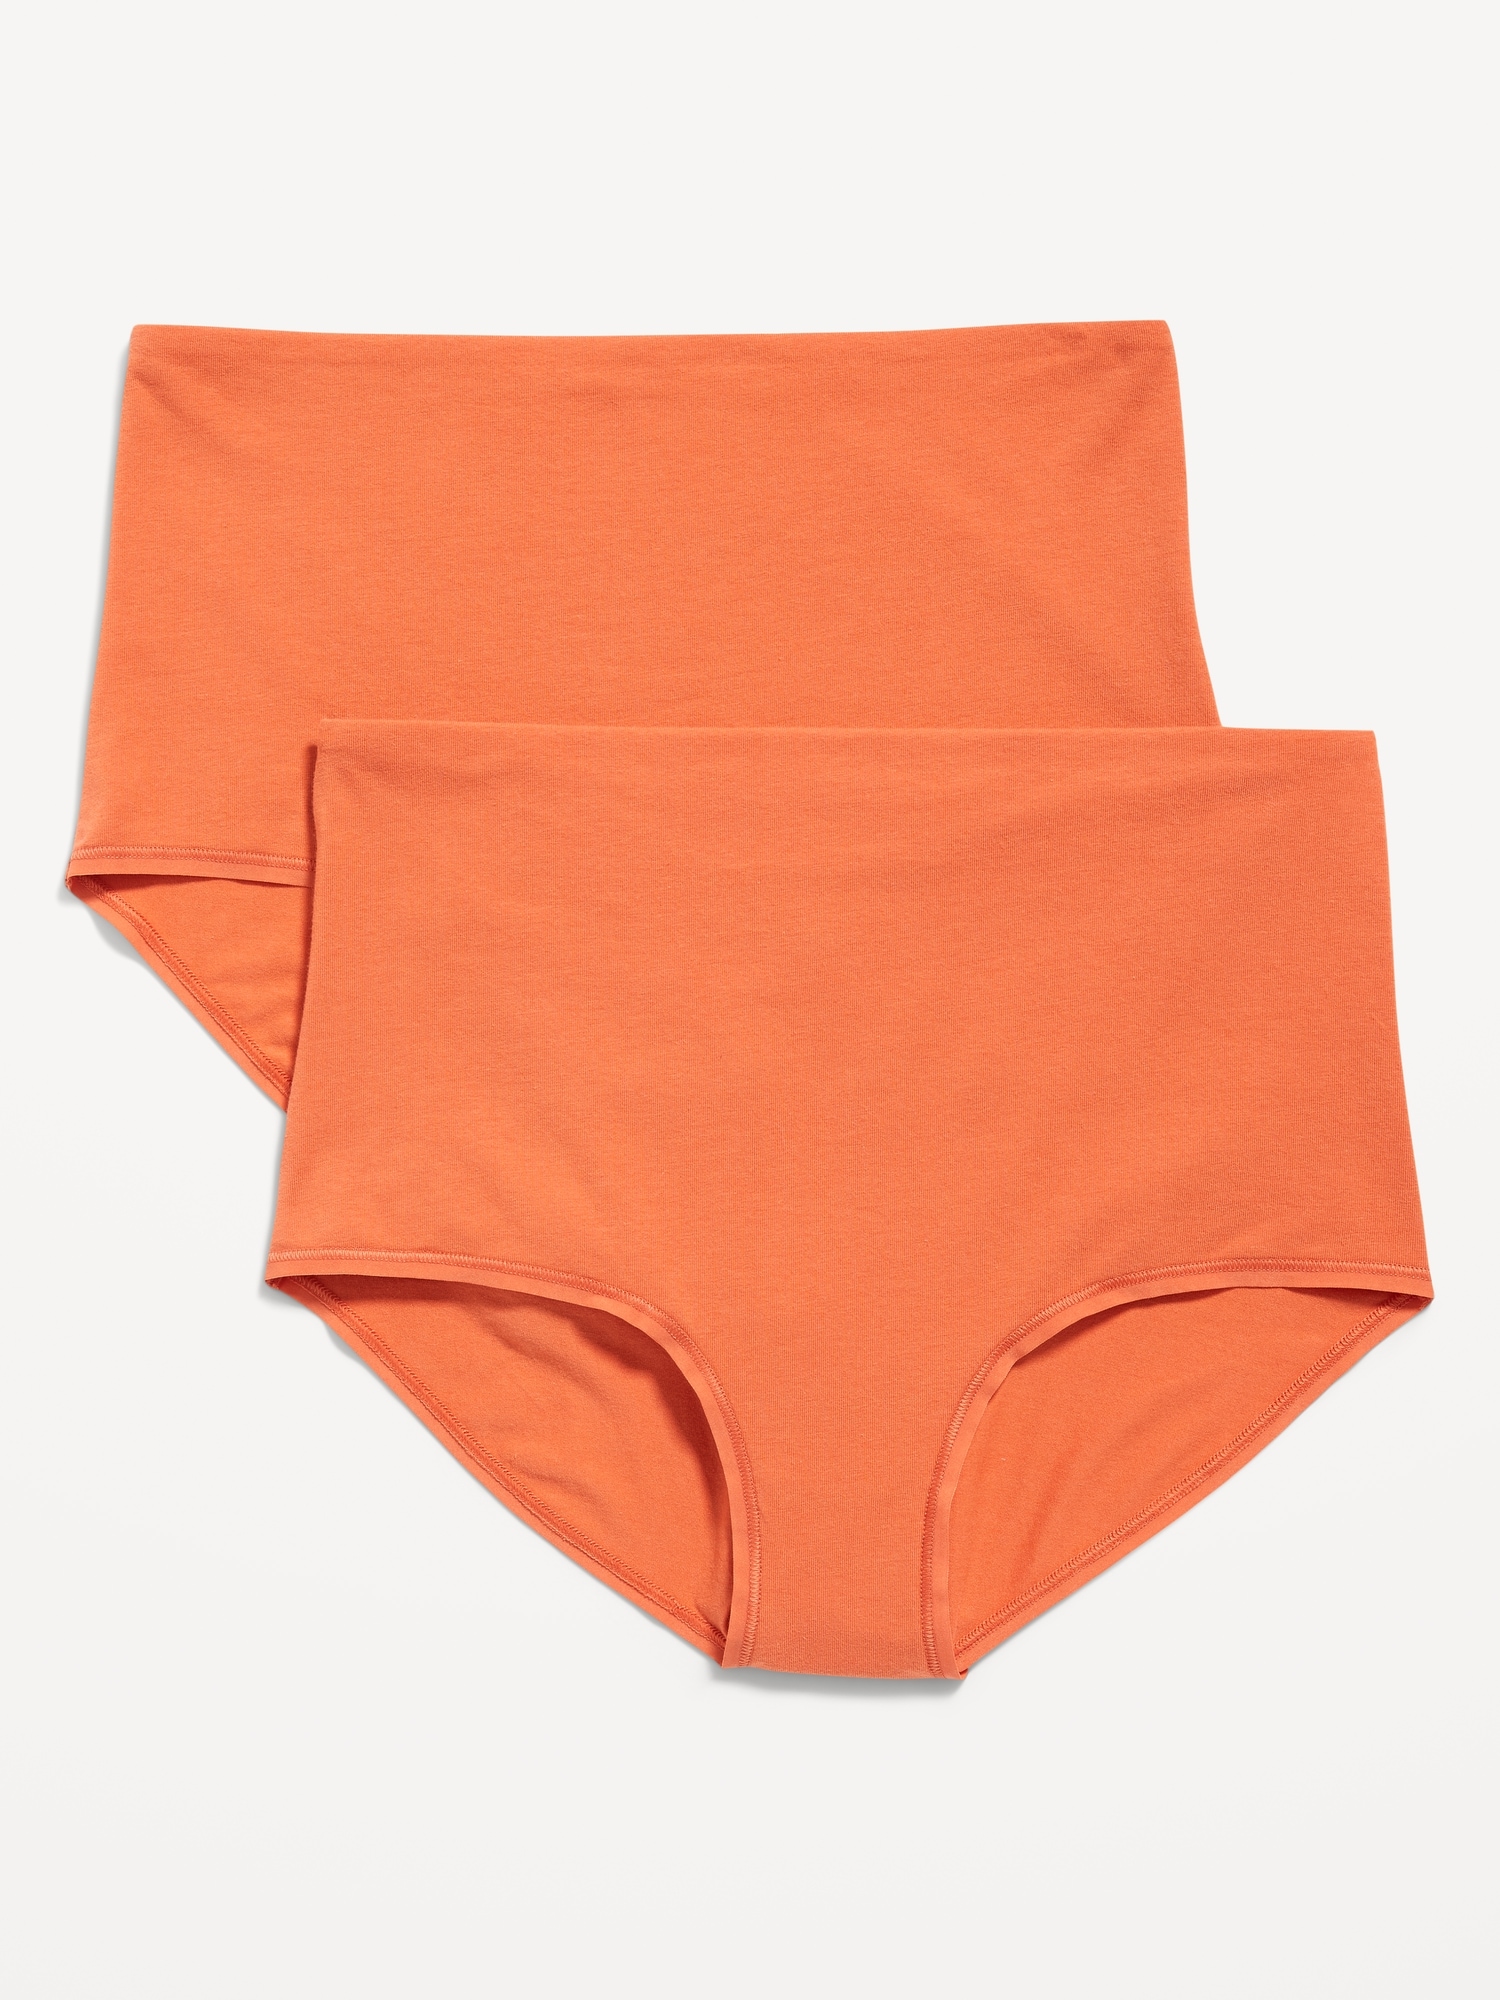 Custom Variety Pack Orange Panties for Women